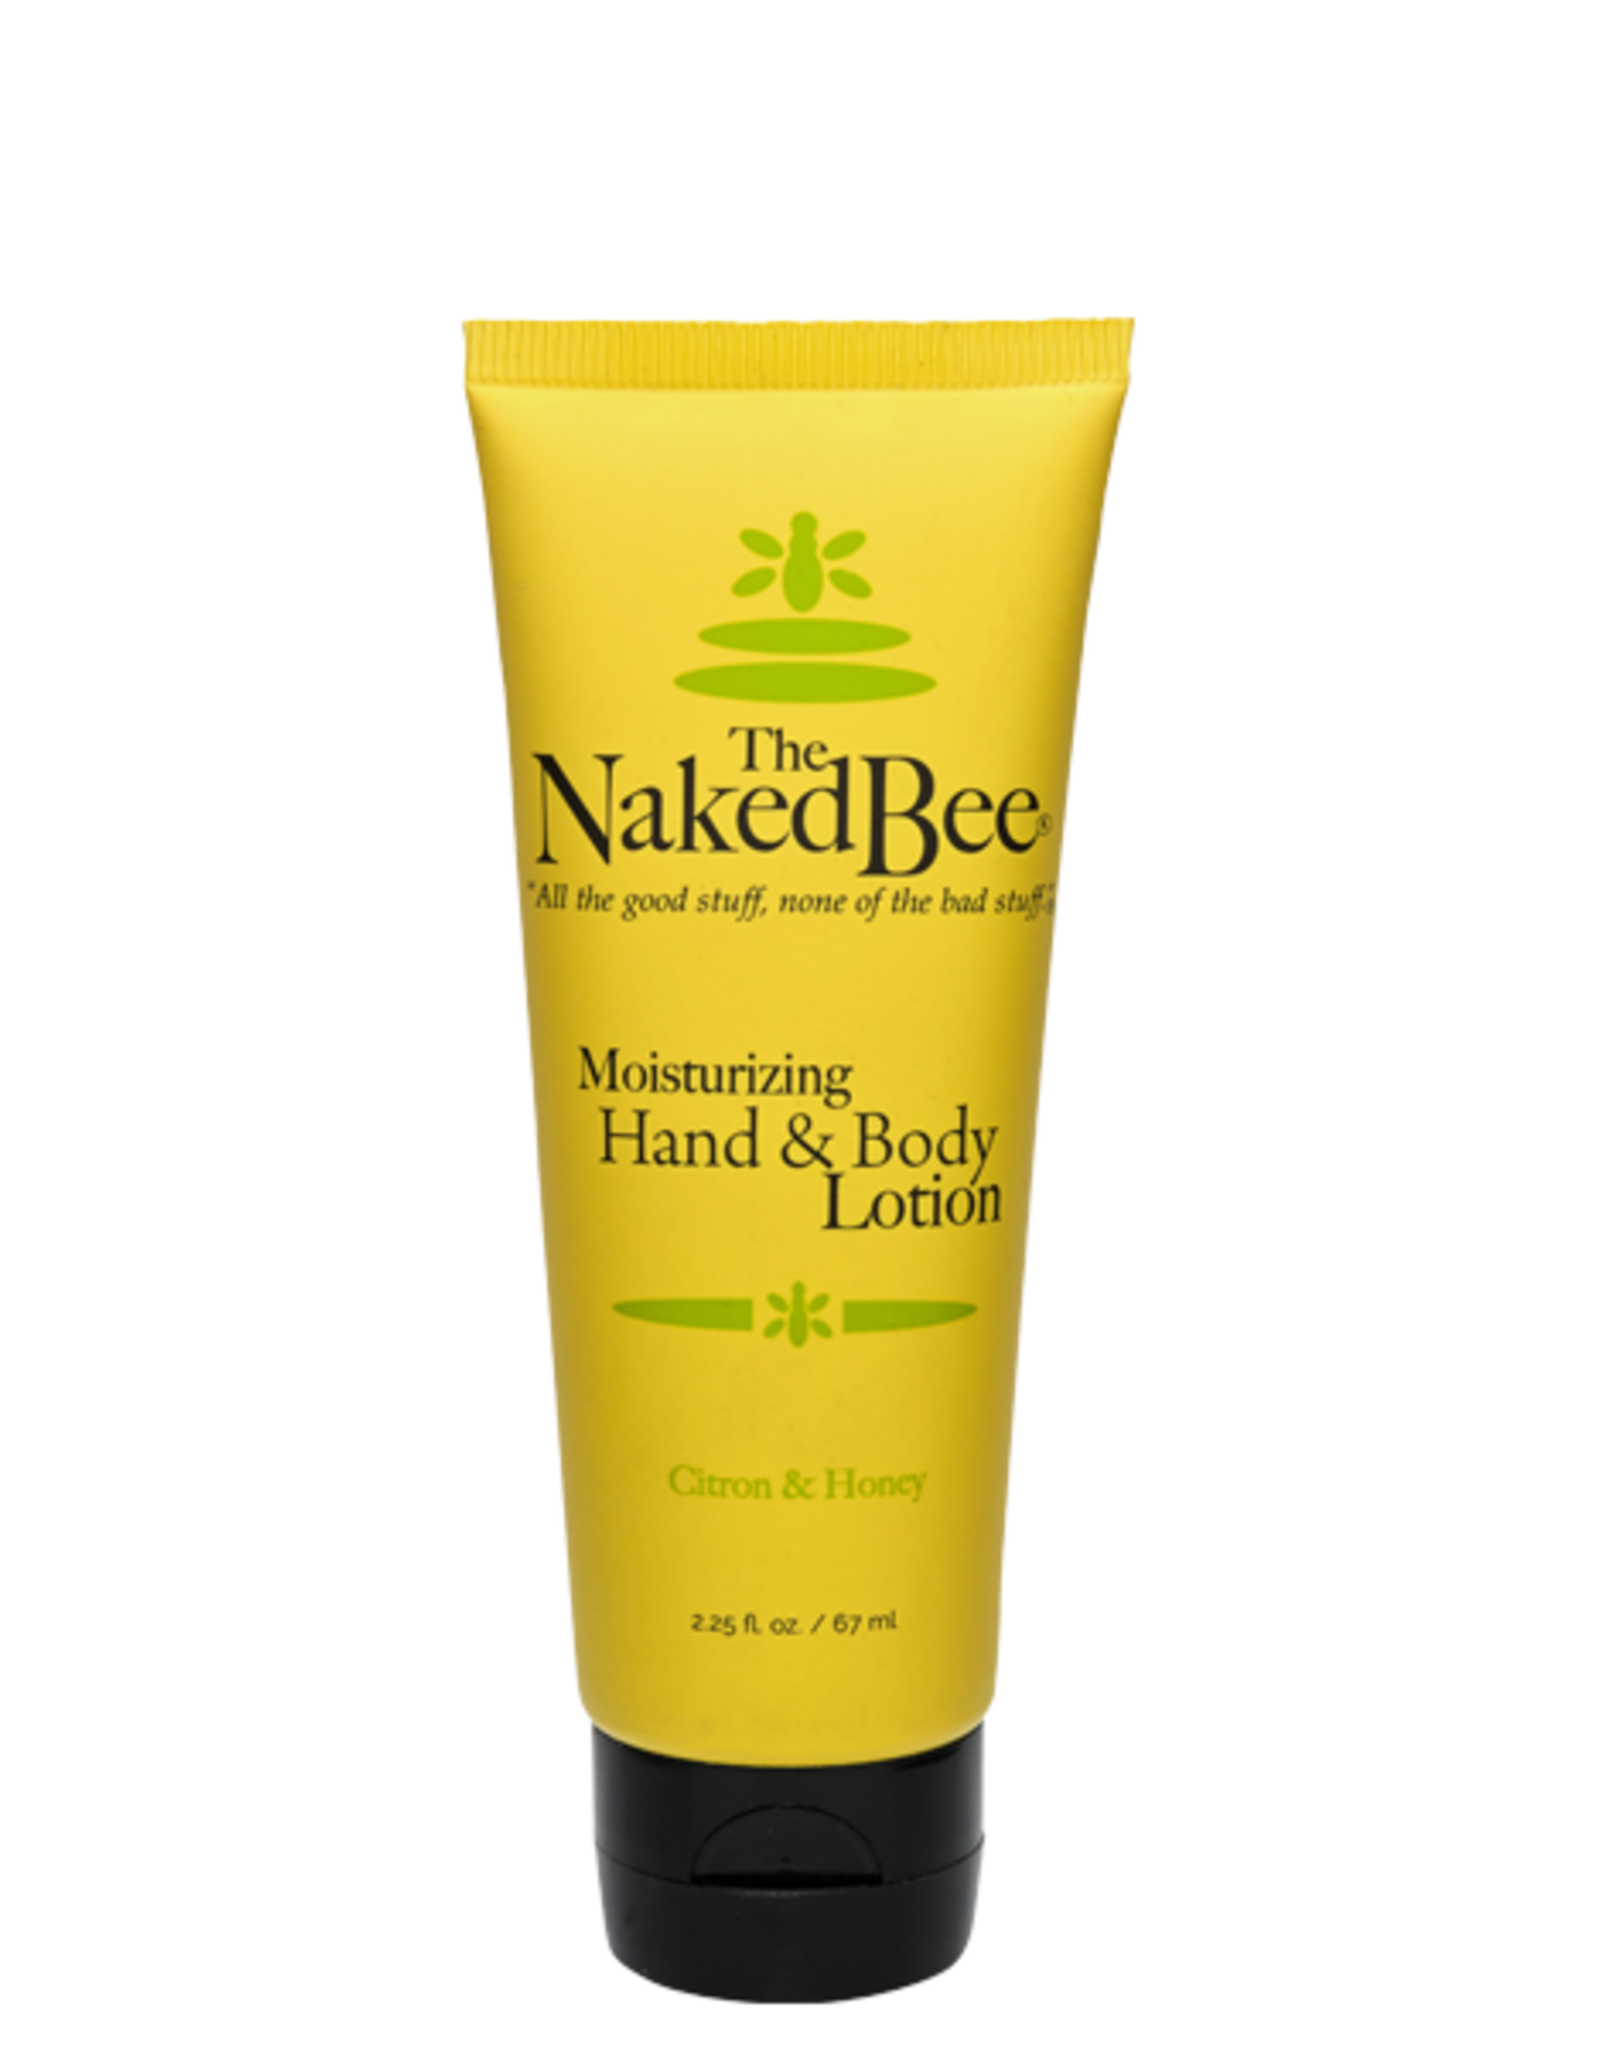 Naked Bee Citron & Honey Small Hand & Body Lotion